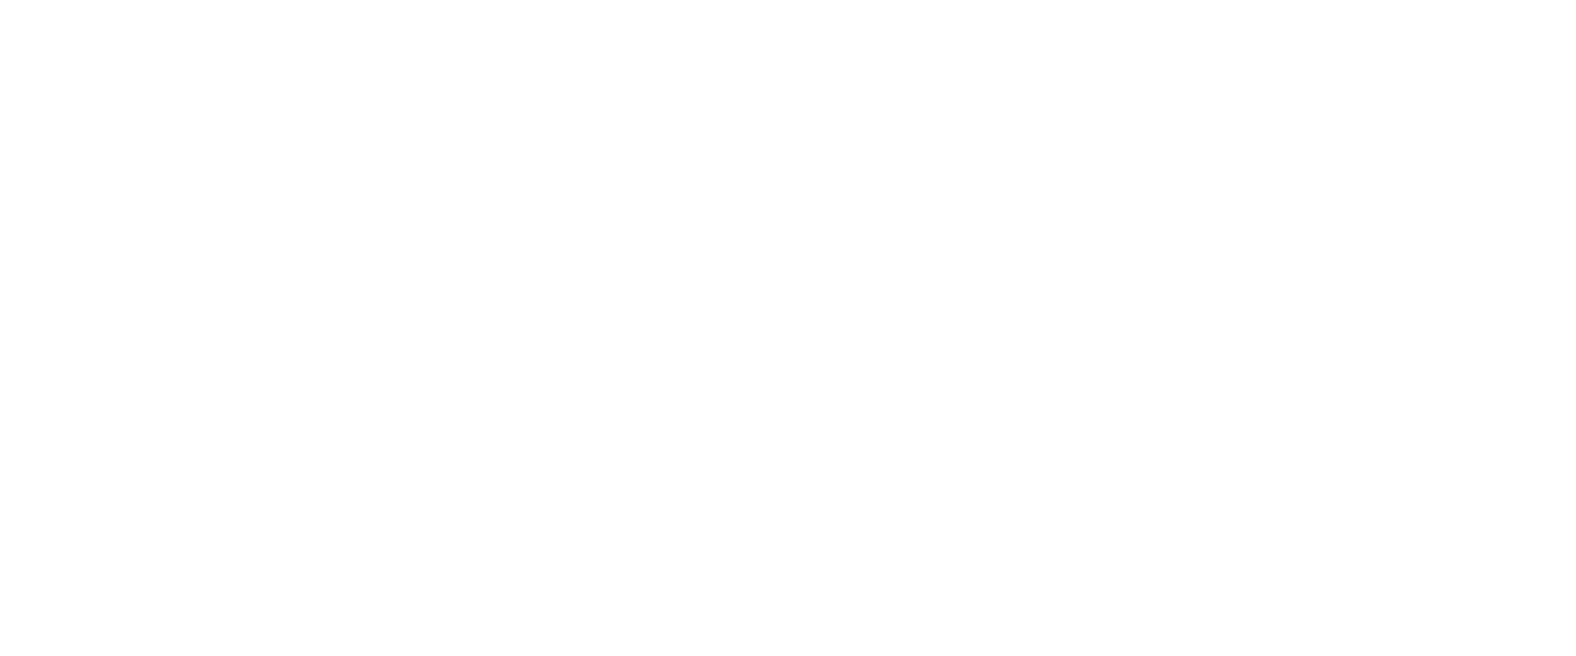 Arab National Bank logo for dark backgrounds (transparent PNG)